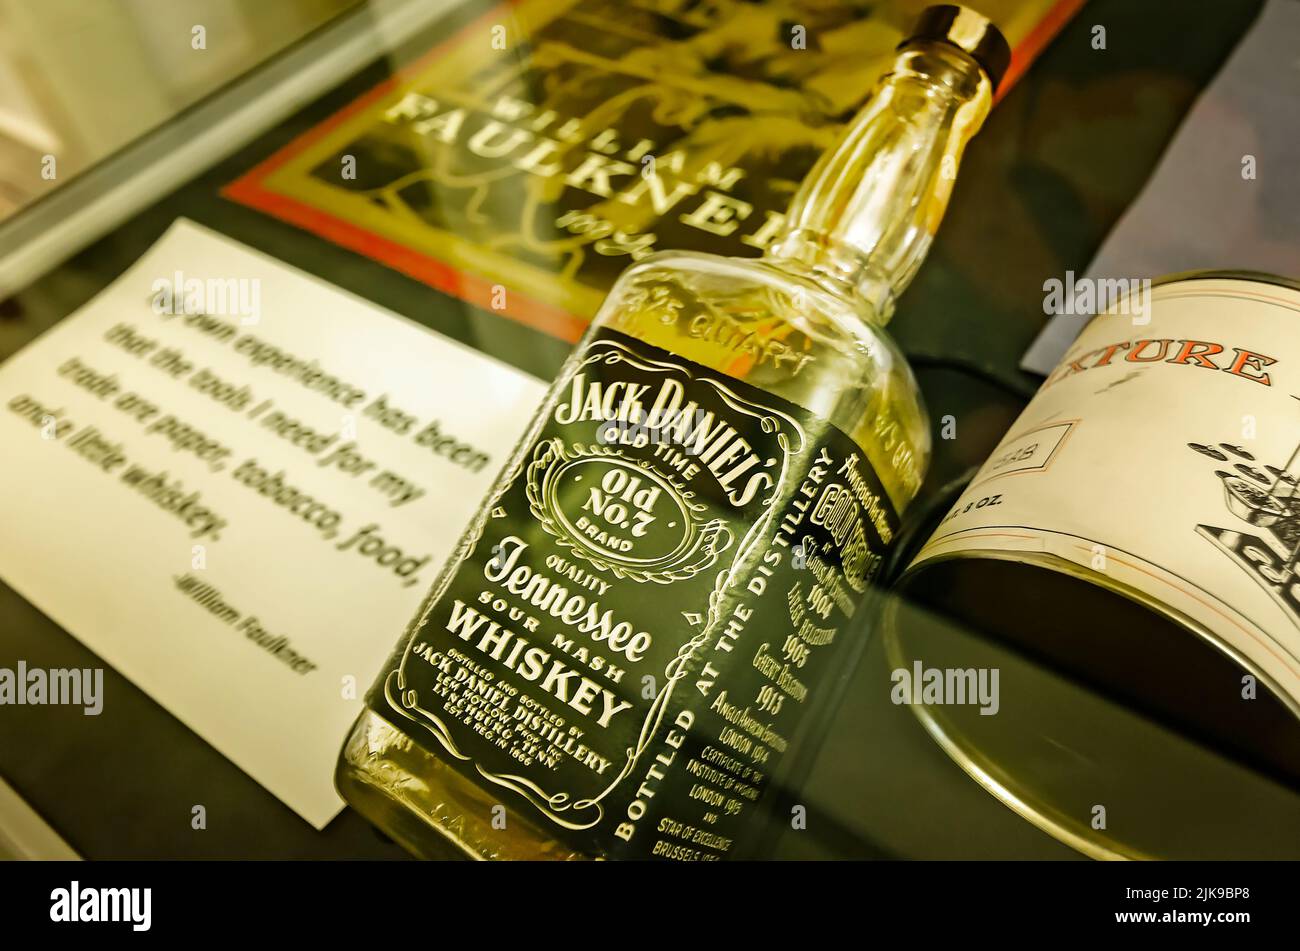 Una bottiglia di whiskey Jack Daniel's Old No. 7 e una lattina di tabacco sono raffigurati a Rowan Oak, 30 maggio 2015, a Oxford, Mississippi. Foto Stock